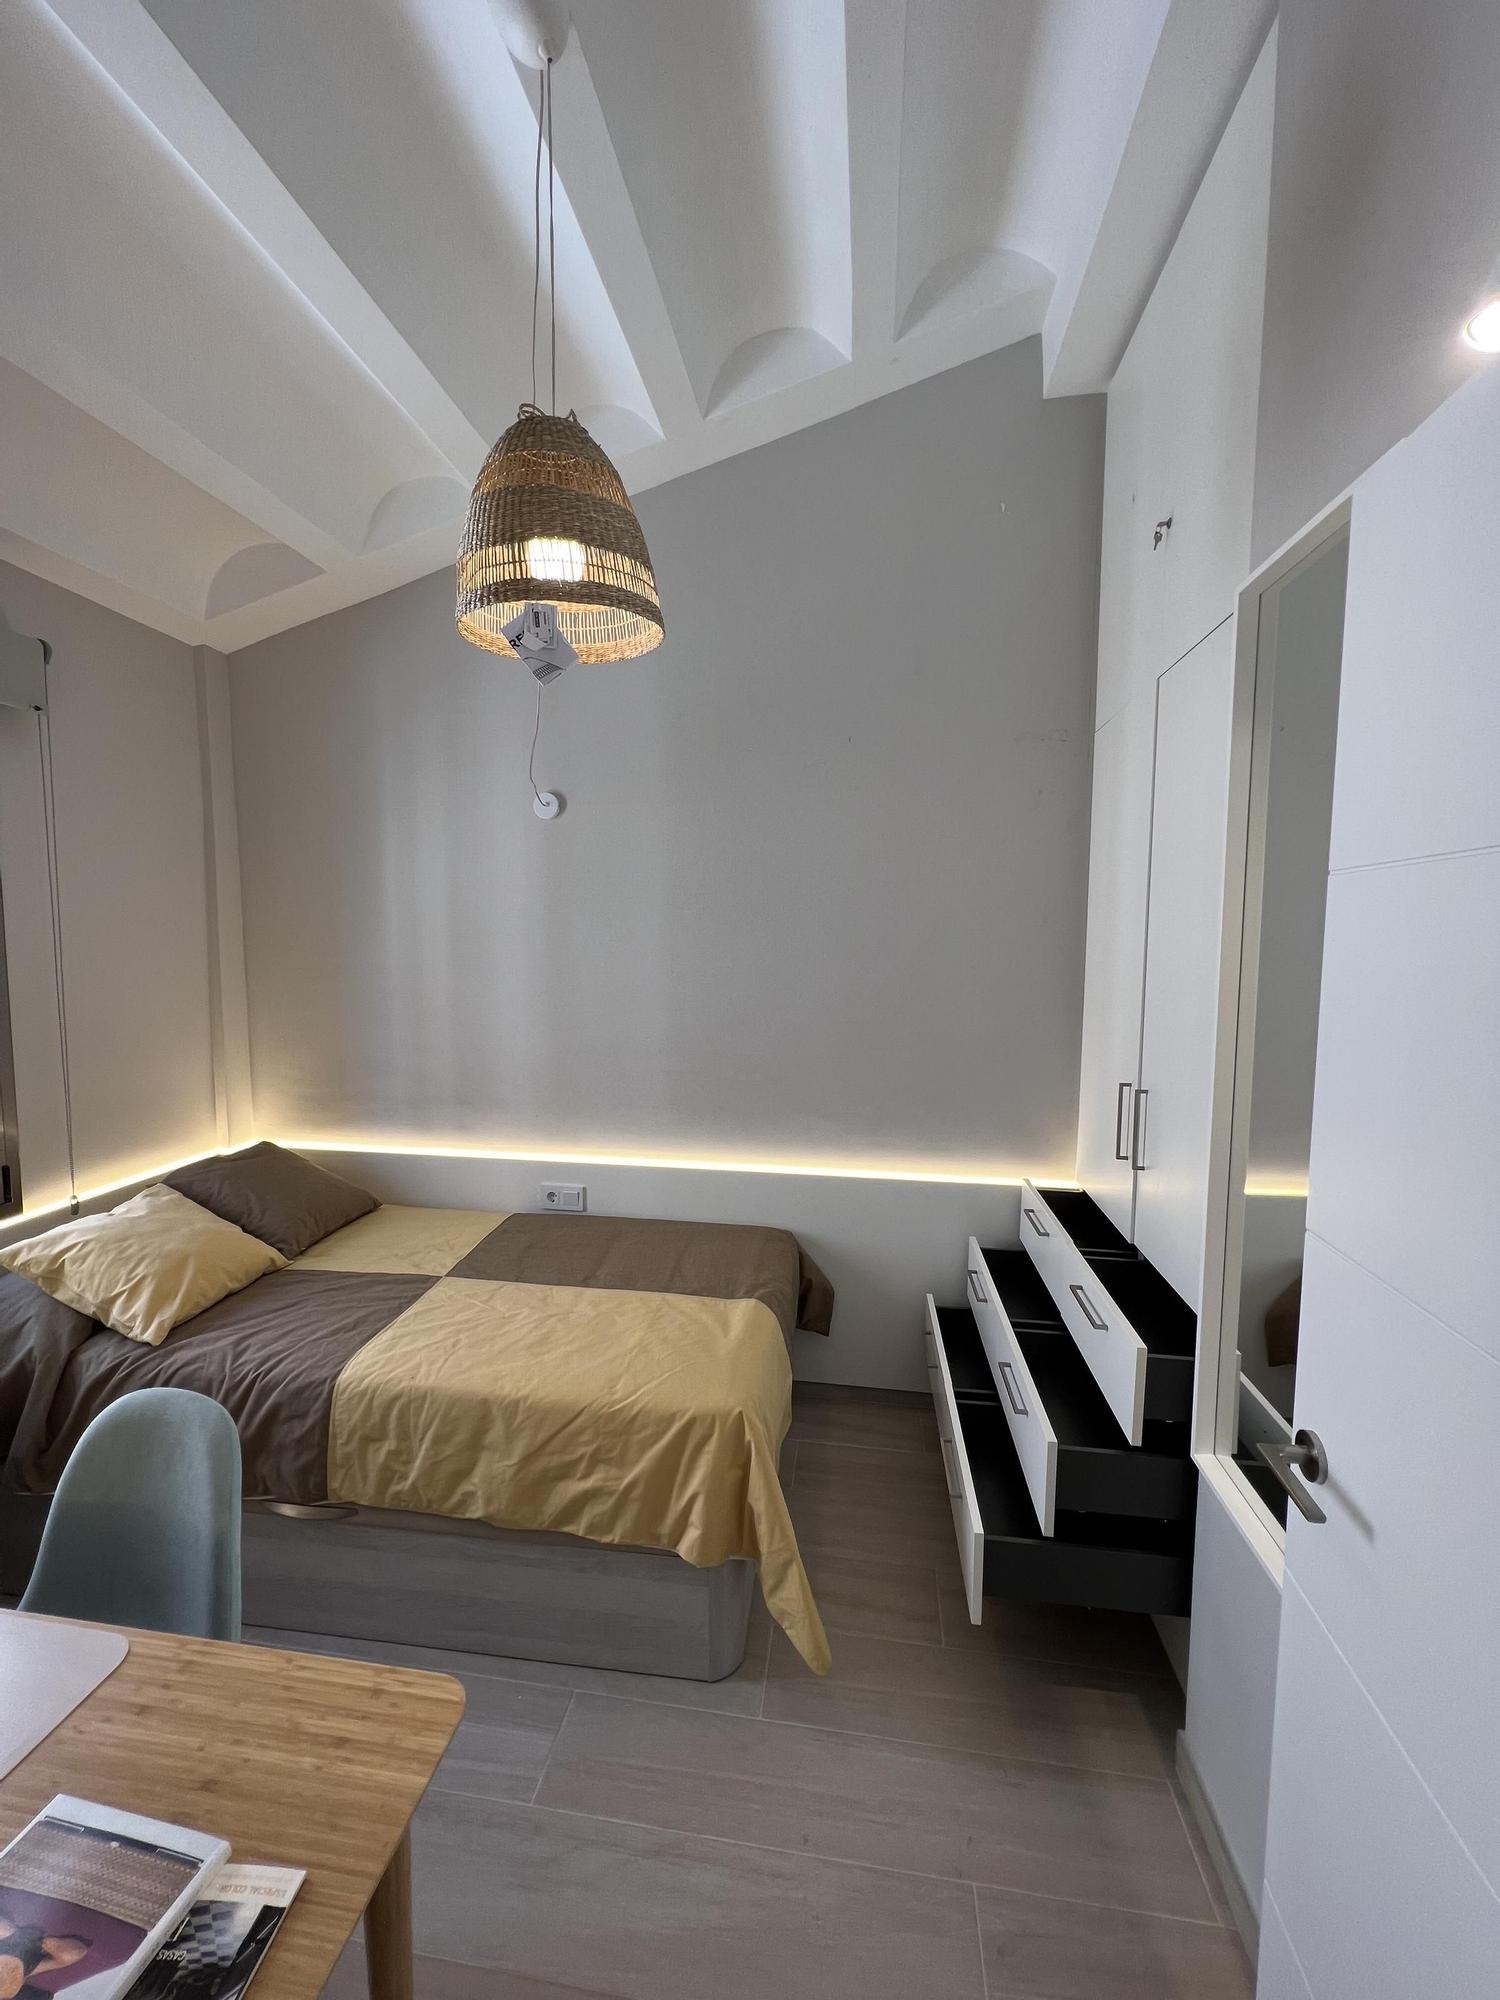 GALERIA | L'oferta de pisos per universitaris creix a Manresa